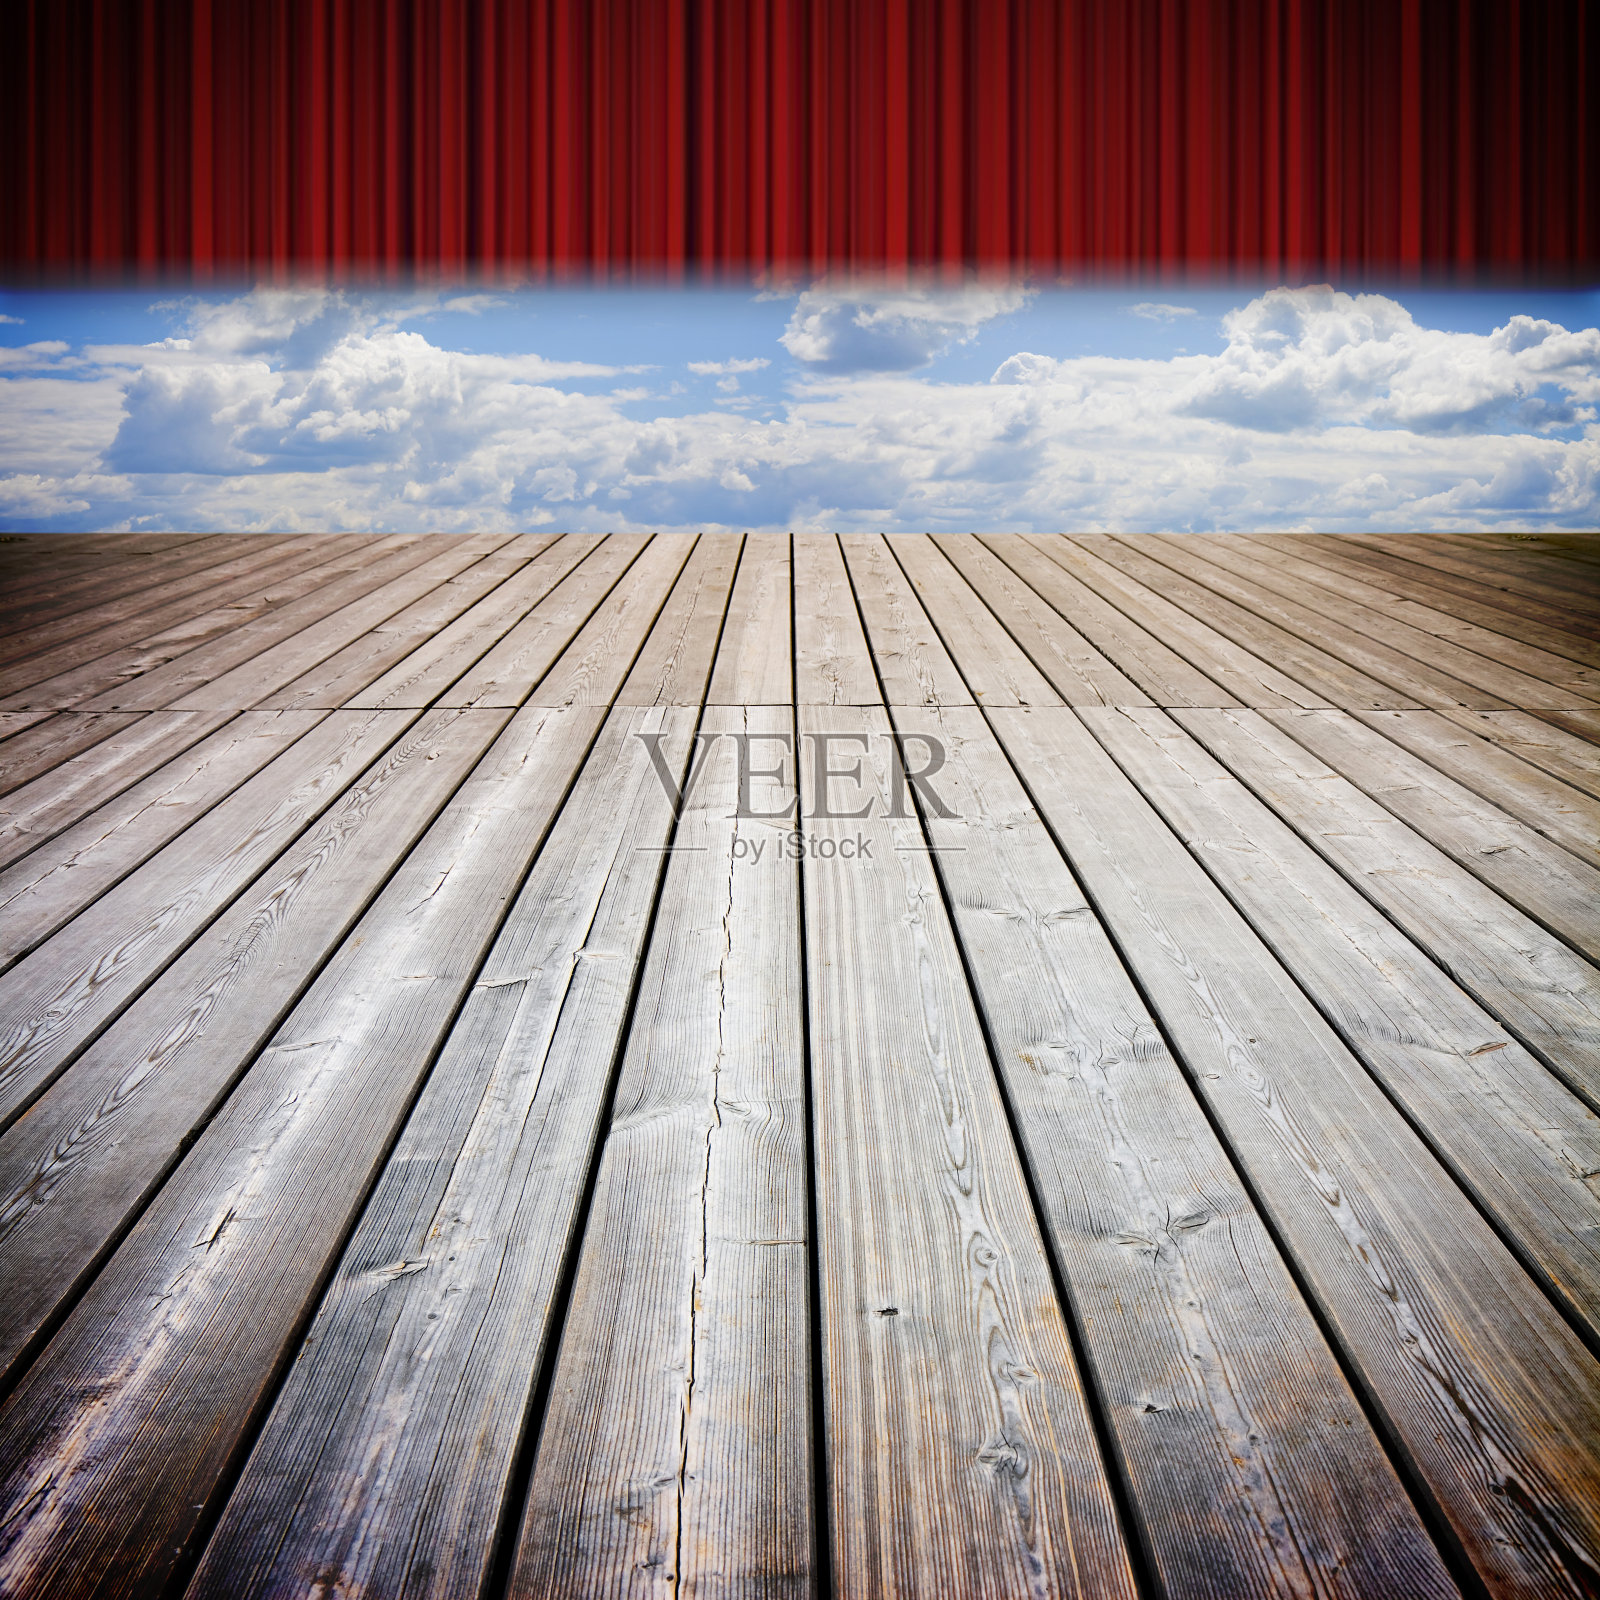 剧院的红窗帘和木地板映衬着多云的天空——这是一个概念图像照片摄影图片